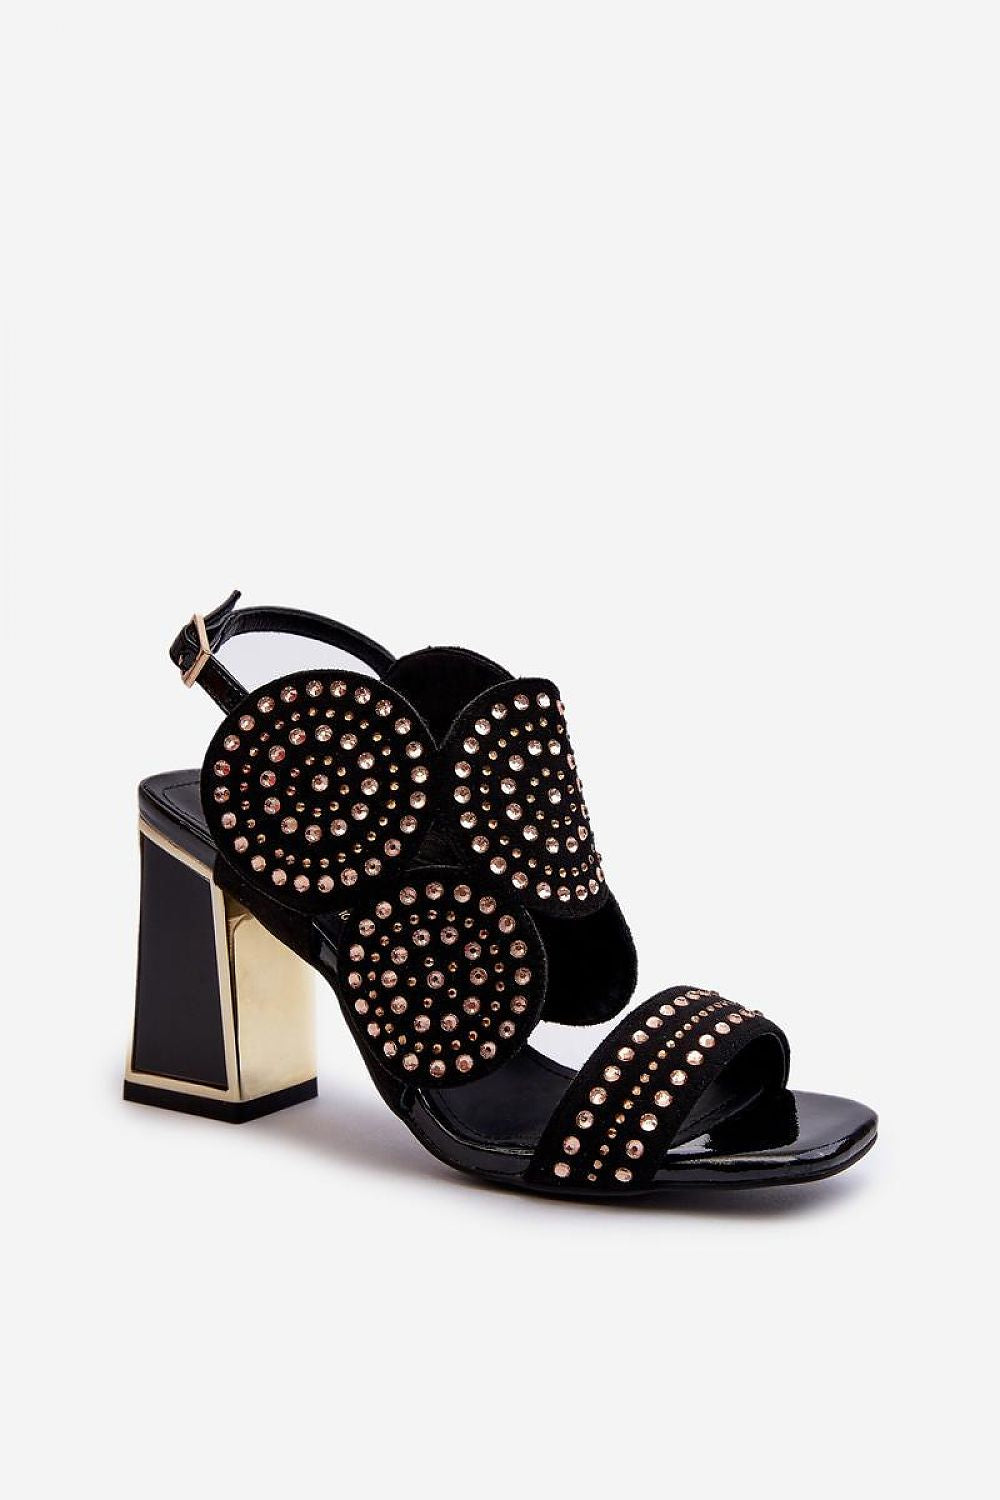 TEEK - Black Bejeweled Rounds Vanity Heel Sandals SHOES TEEK MH 6.5  